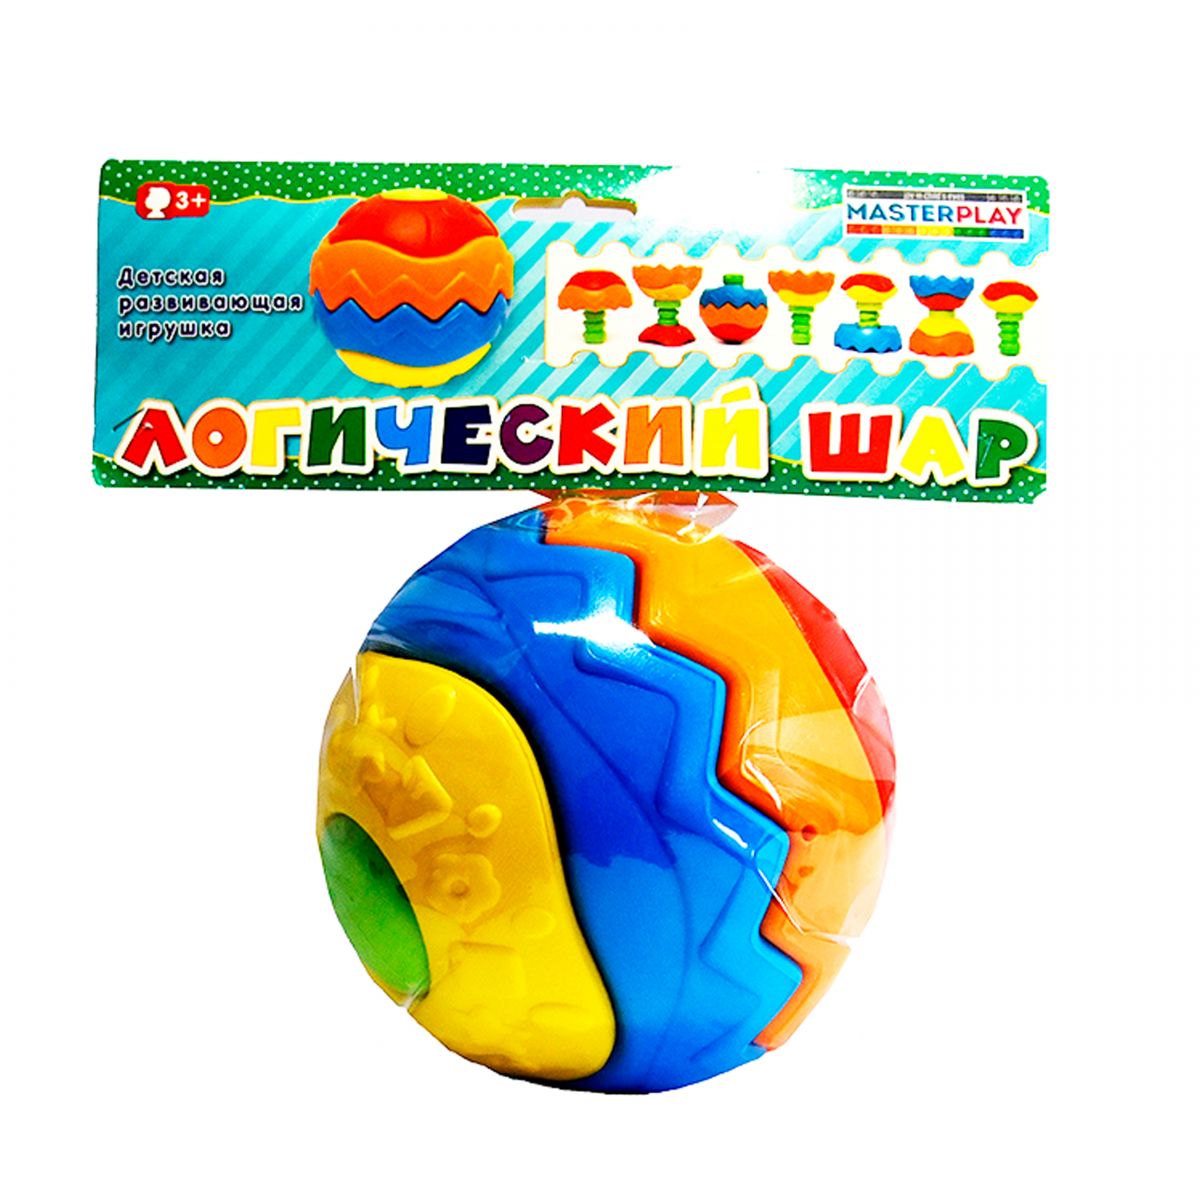 Детская развивающая игрушка "Логический шар"